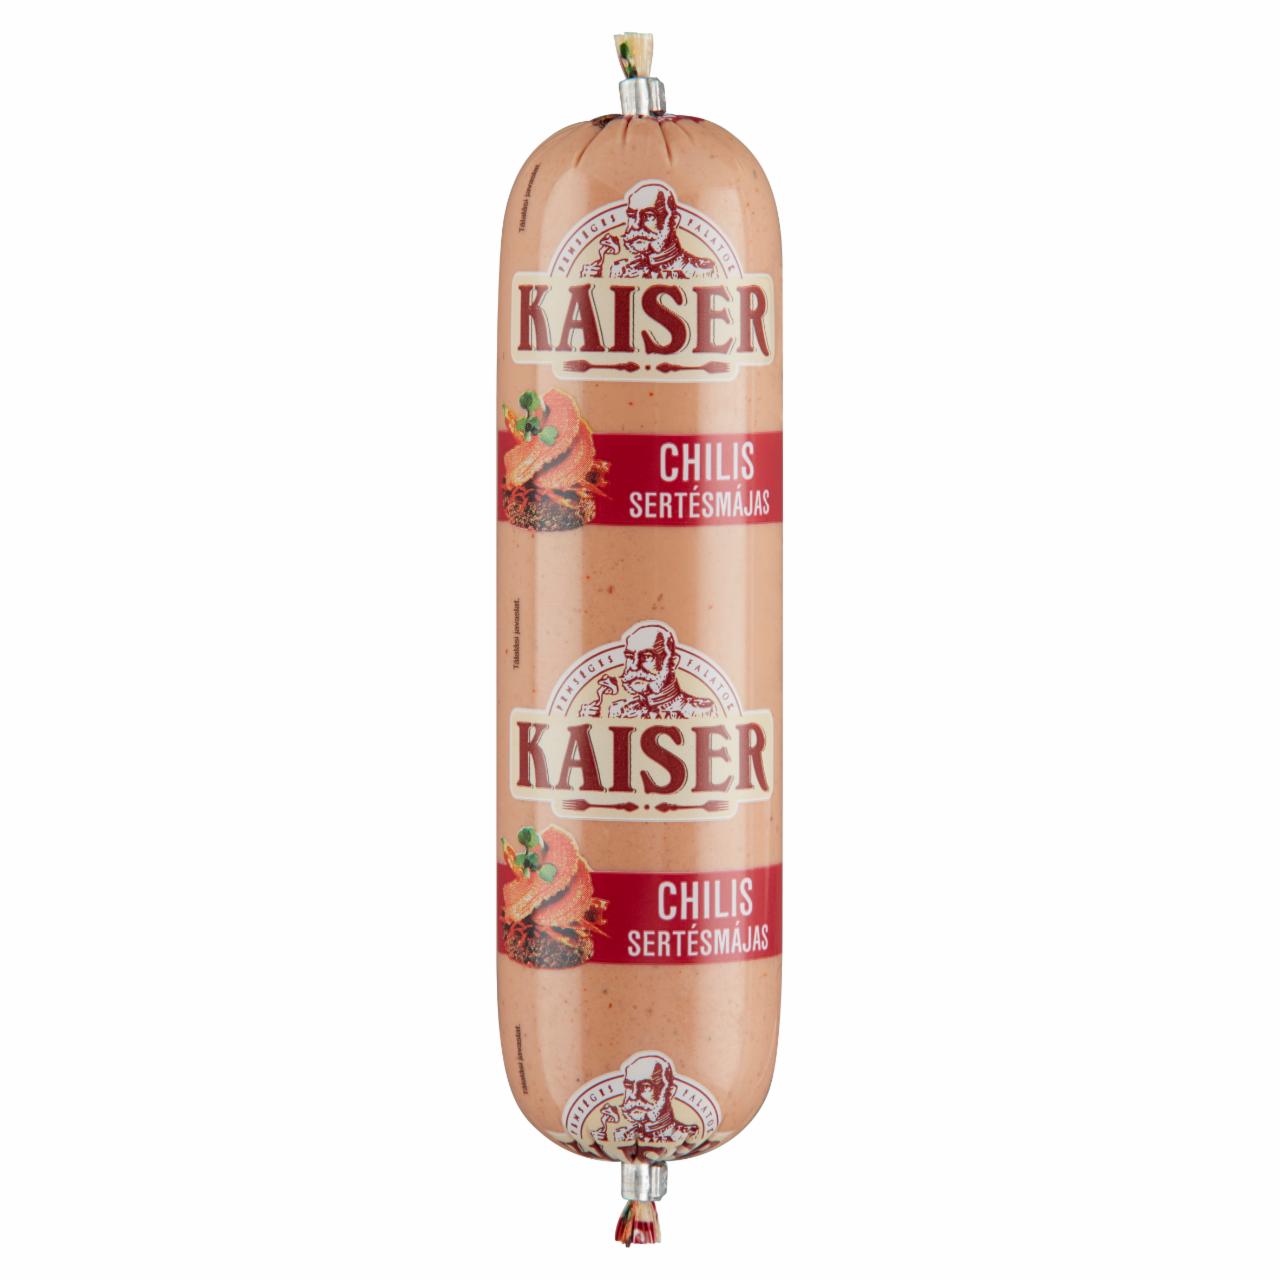 Képek - Kaiser chilis sertésmájas 120 g